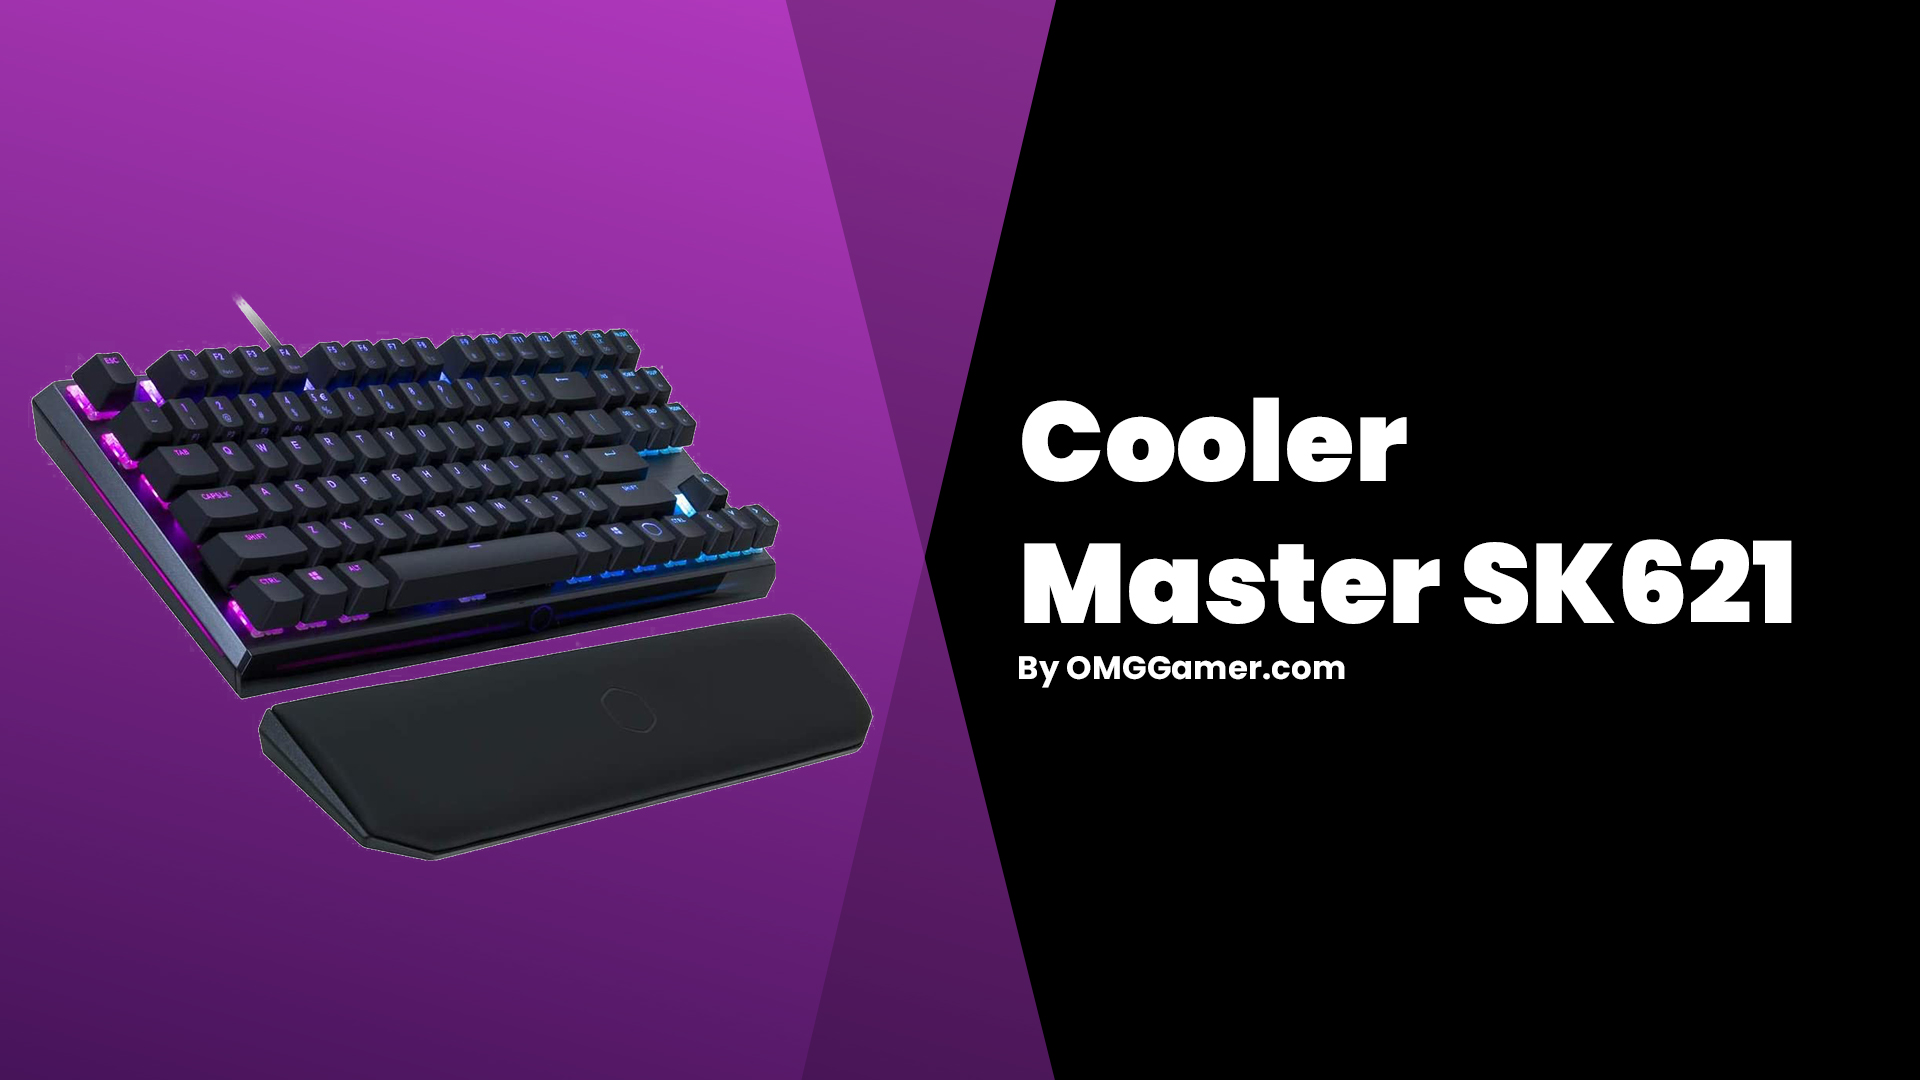 Cooler Master SK621: Small Gaming Keyboard